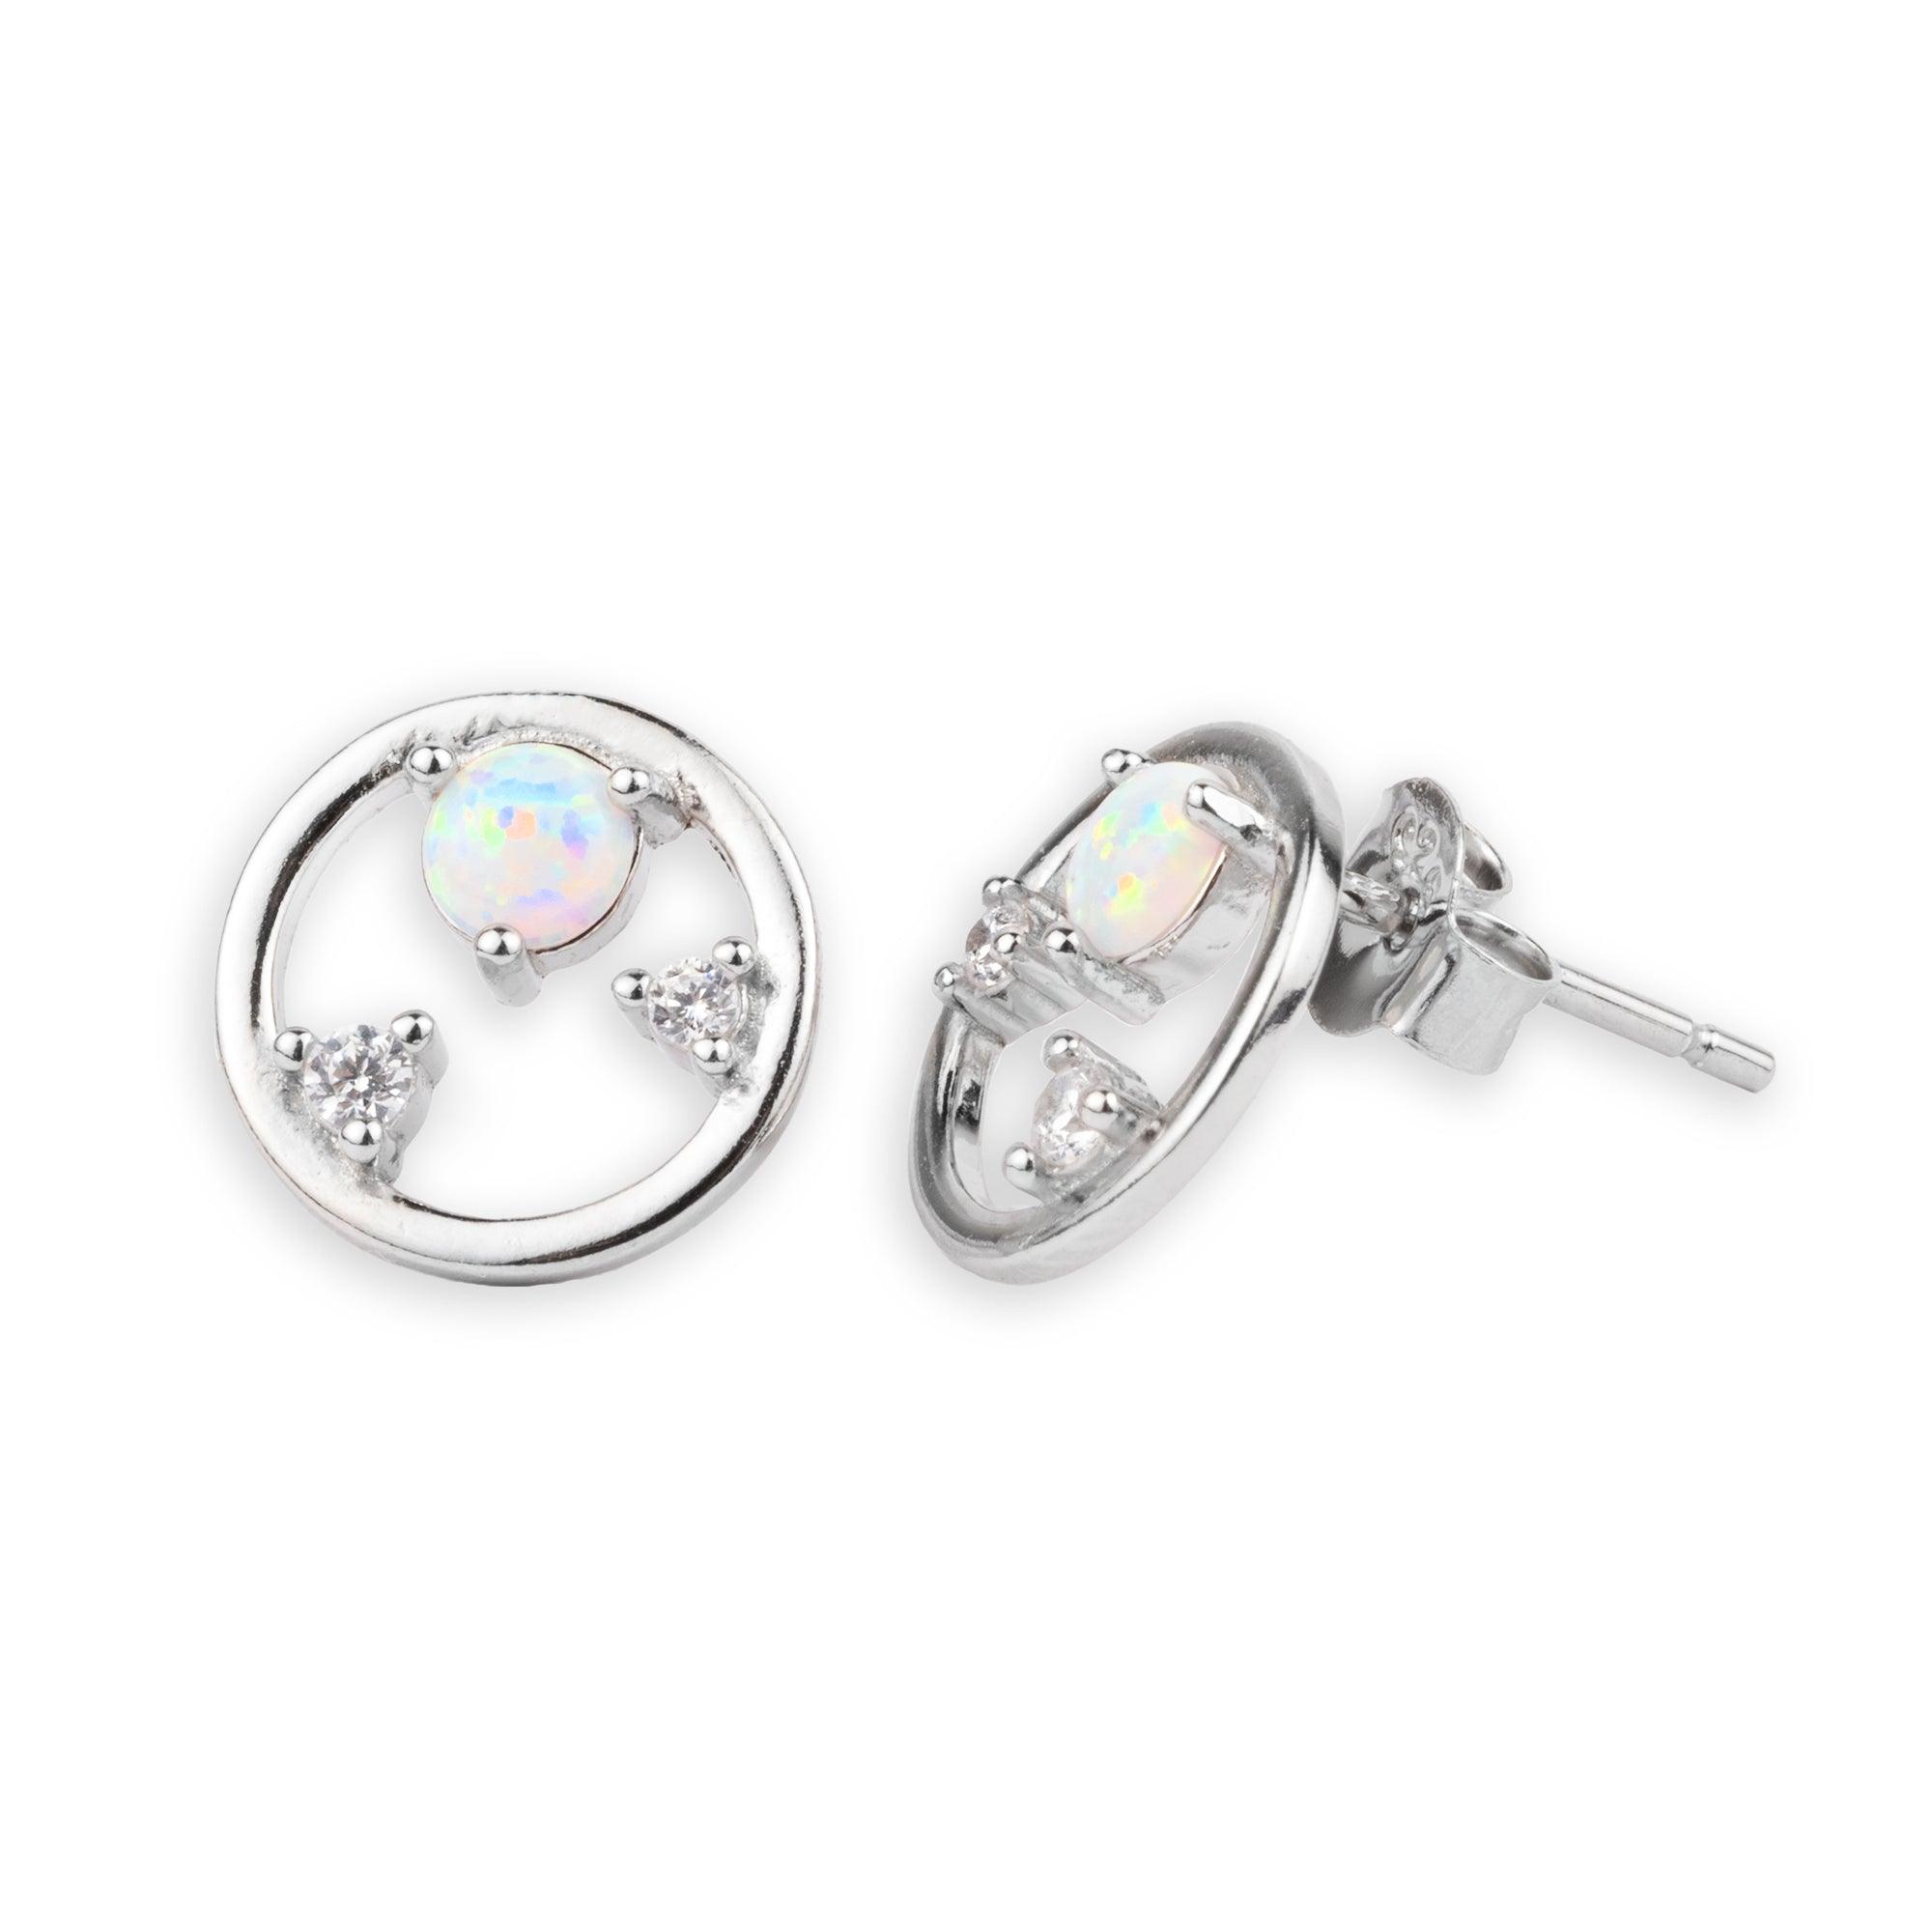 Gift Ideas Under 50  Statement Earrings  Busbee Style  Statement  earrings Gifts Earrings collection